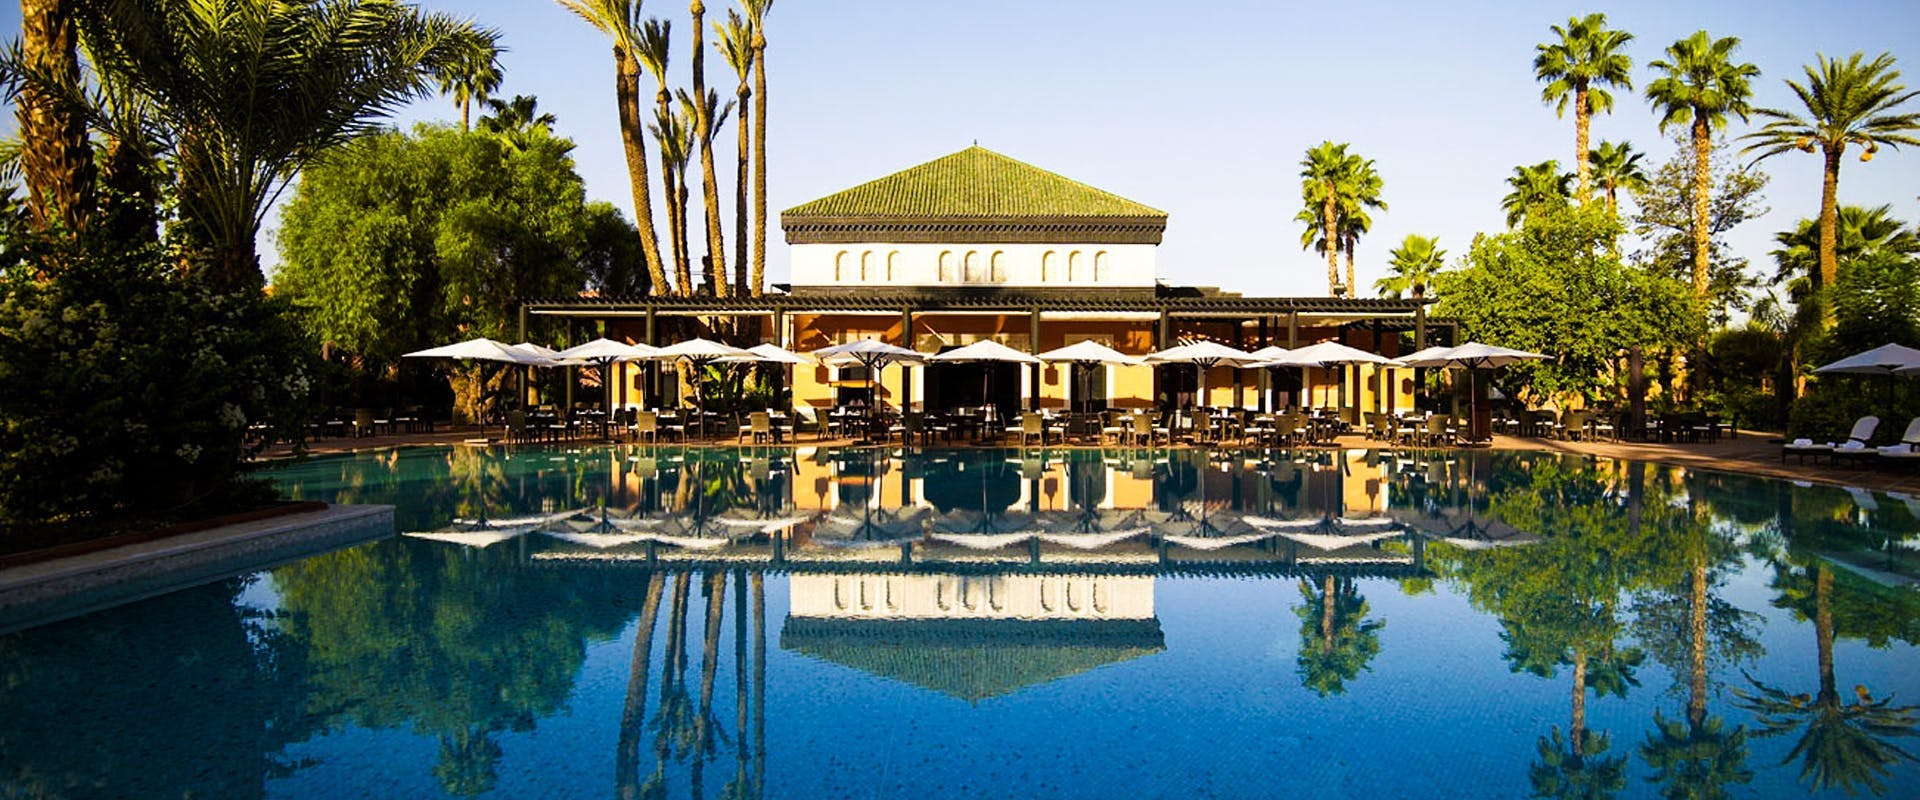 cosa vedere a marrakech piscine esclusive